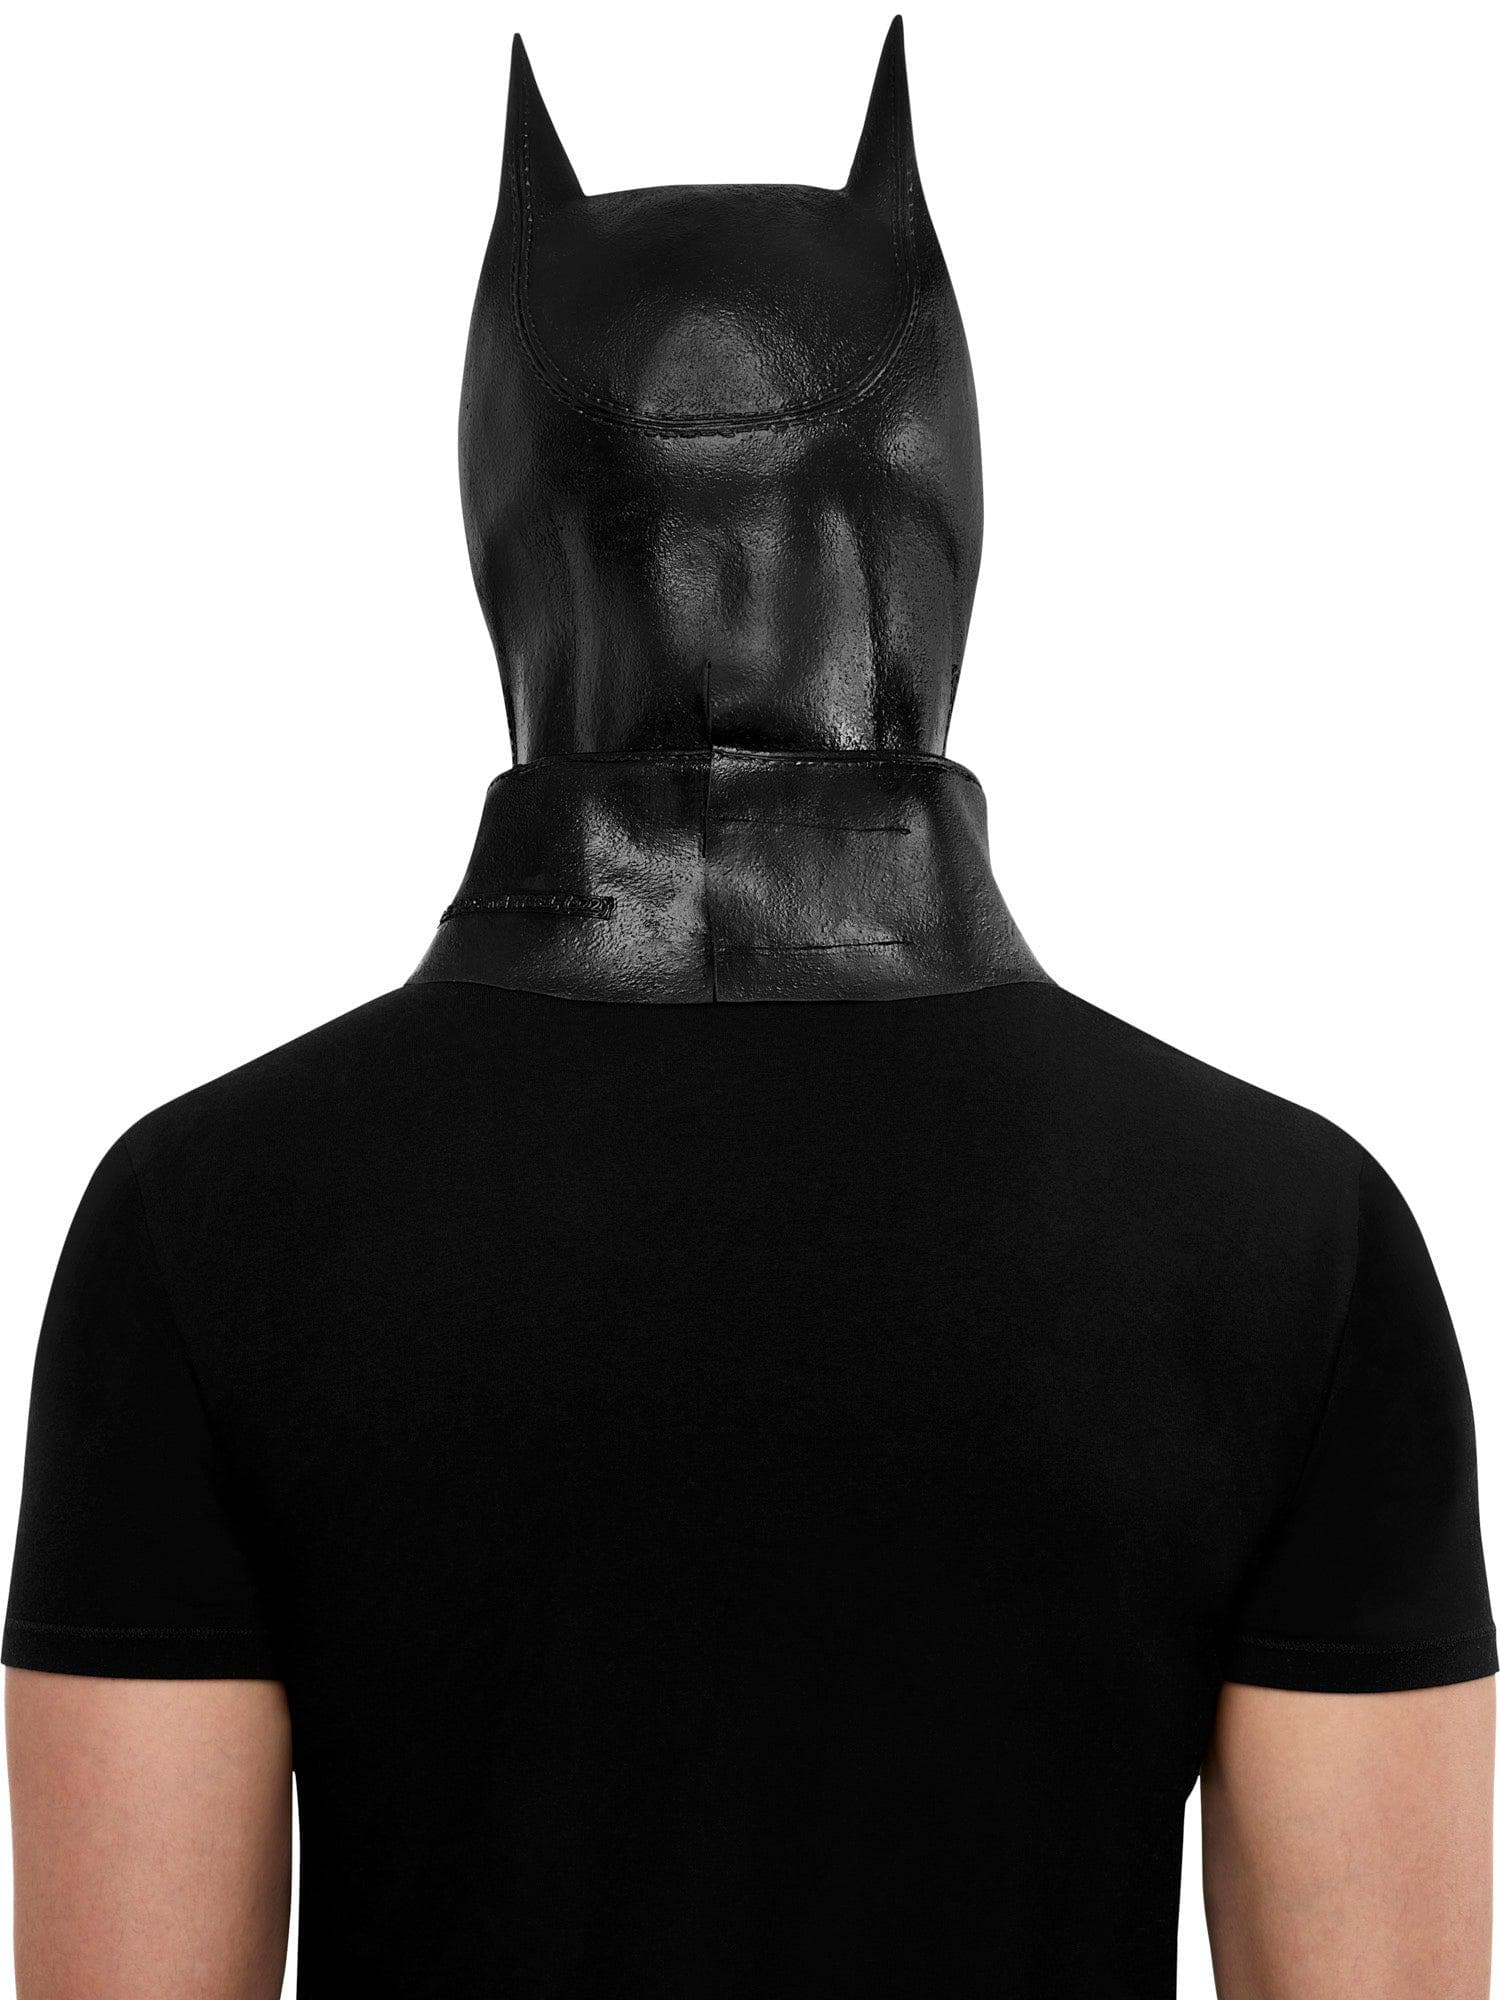 Adult The Batman Overhead Latex Mask - costumes.com